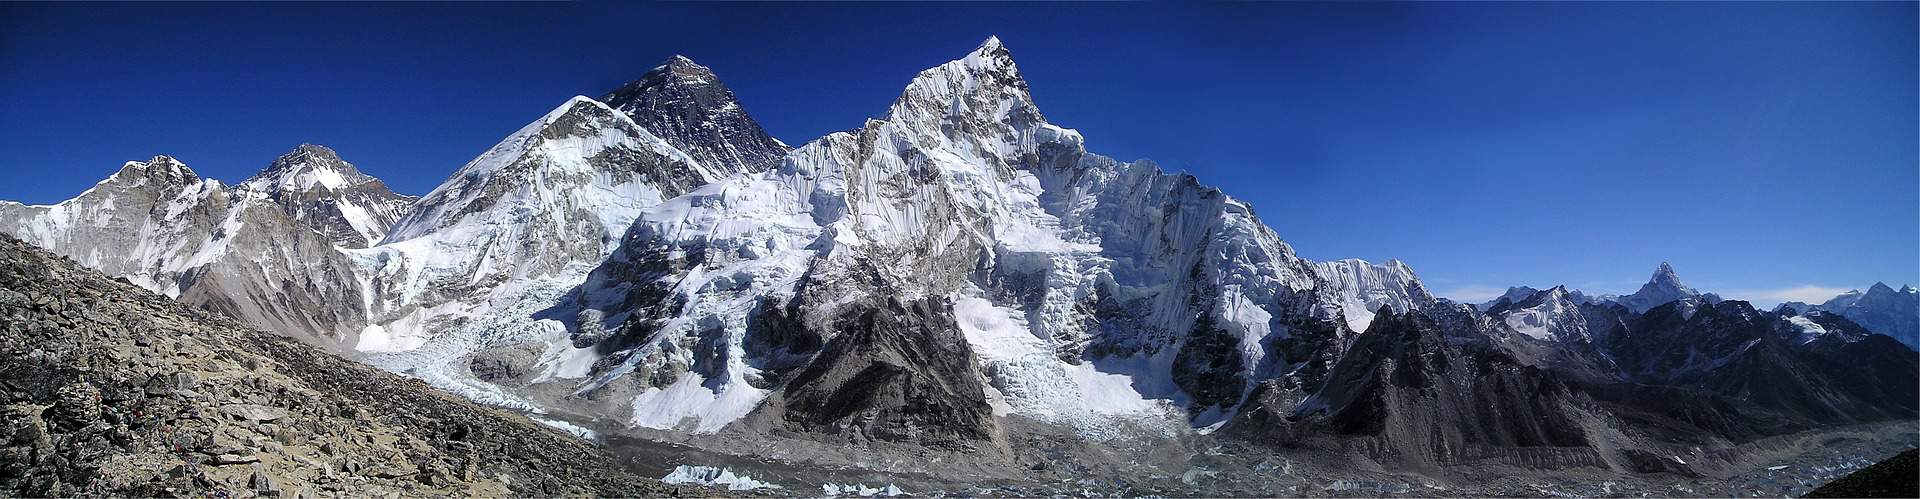 Gipfel des Himalaya Mount Everest